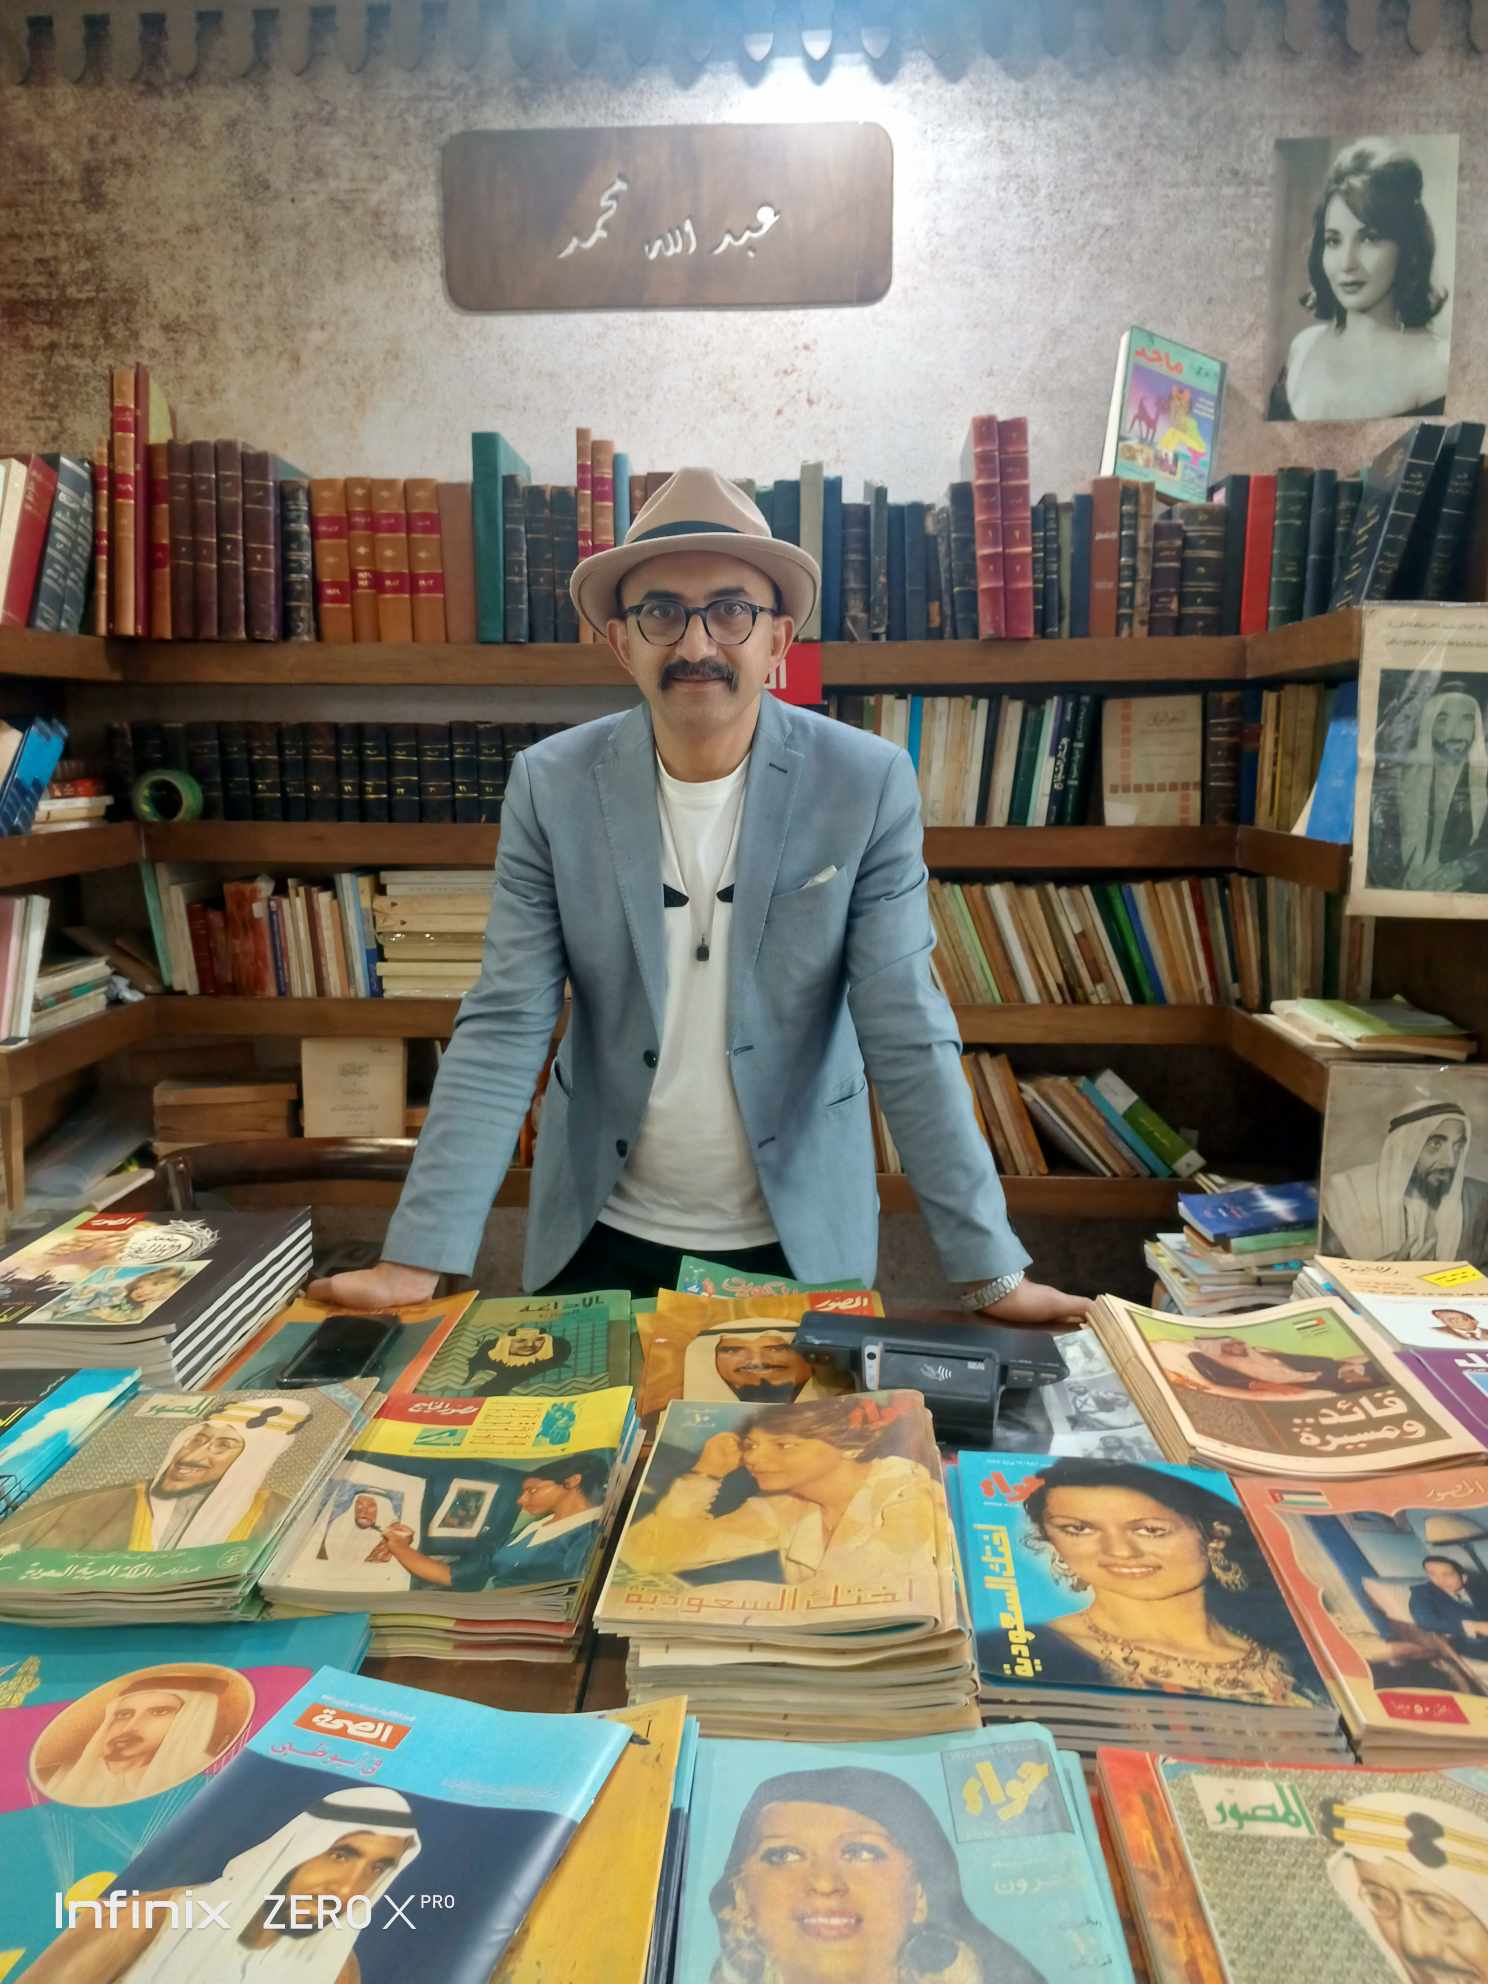  سور الأزبكية في معرض أبو ظبي للكتاب.. أوراق برائحة الماضي